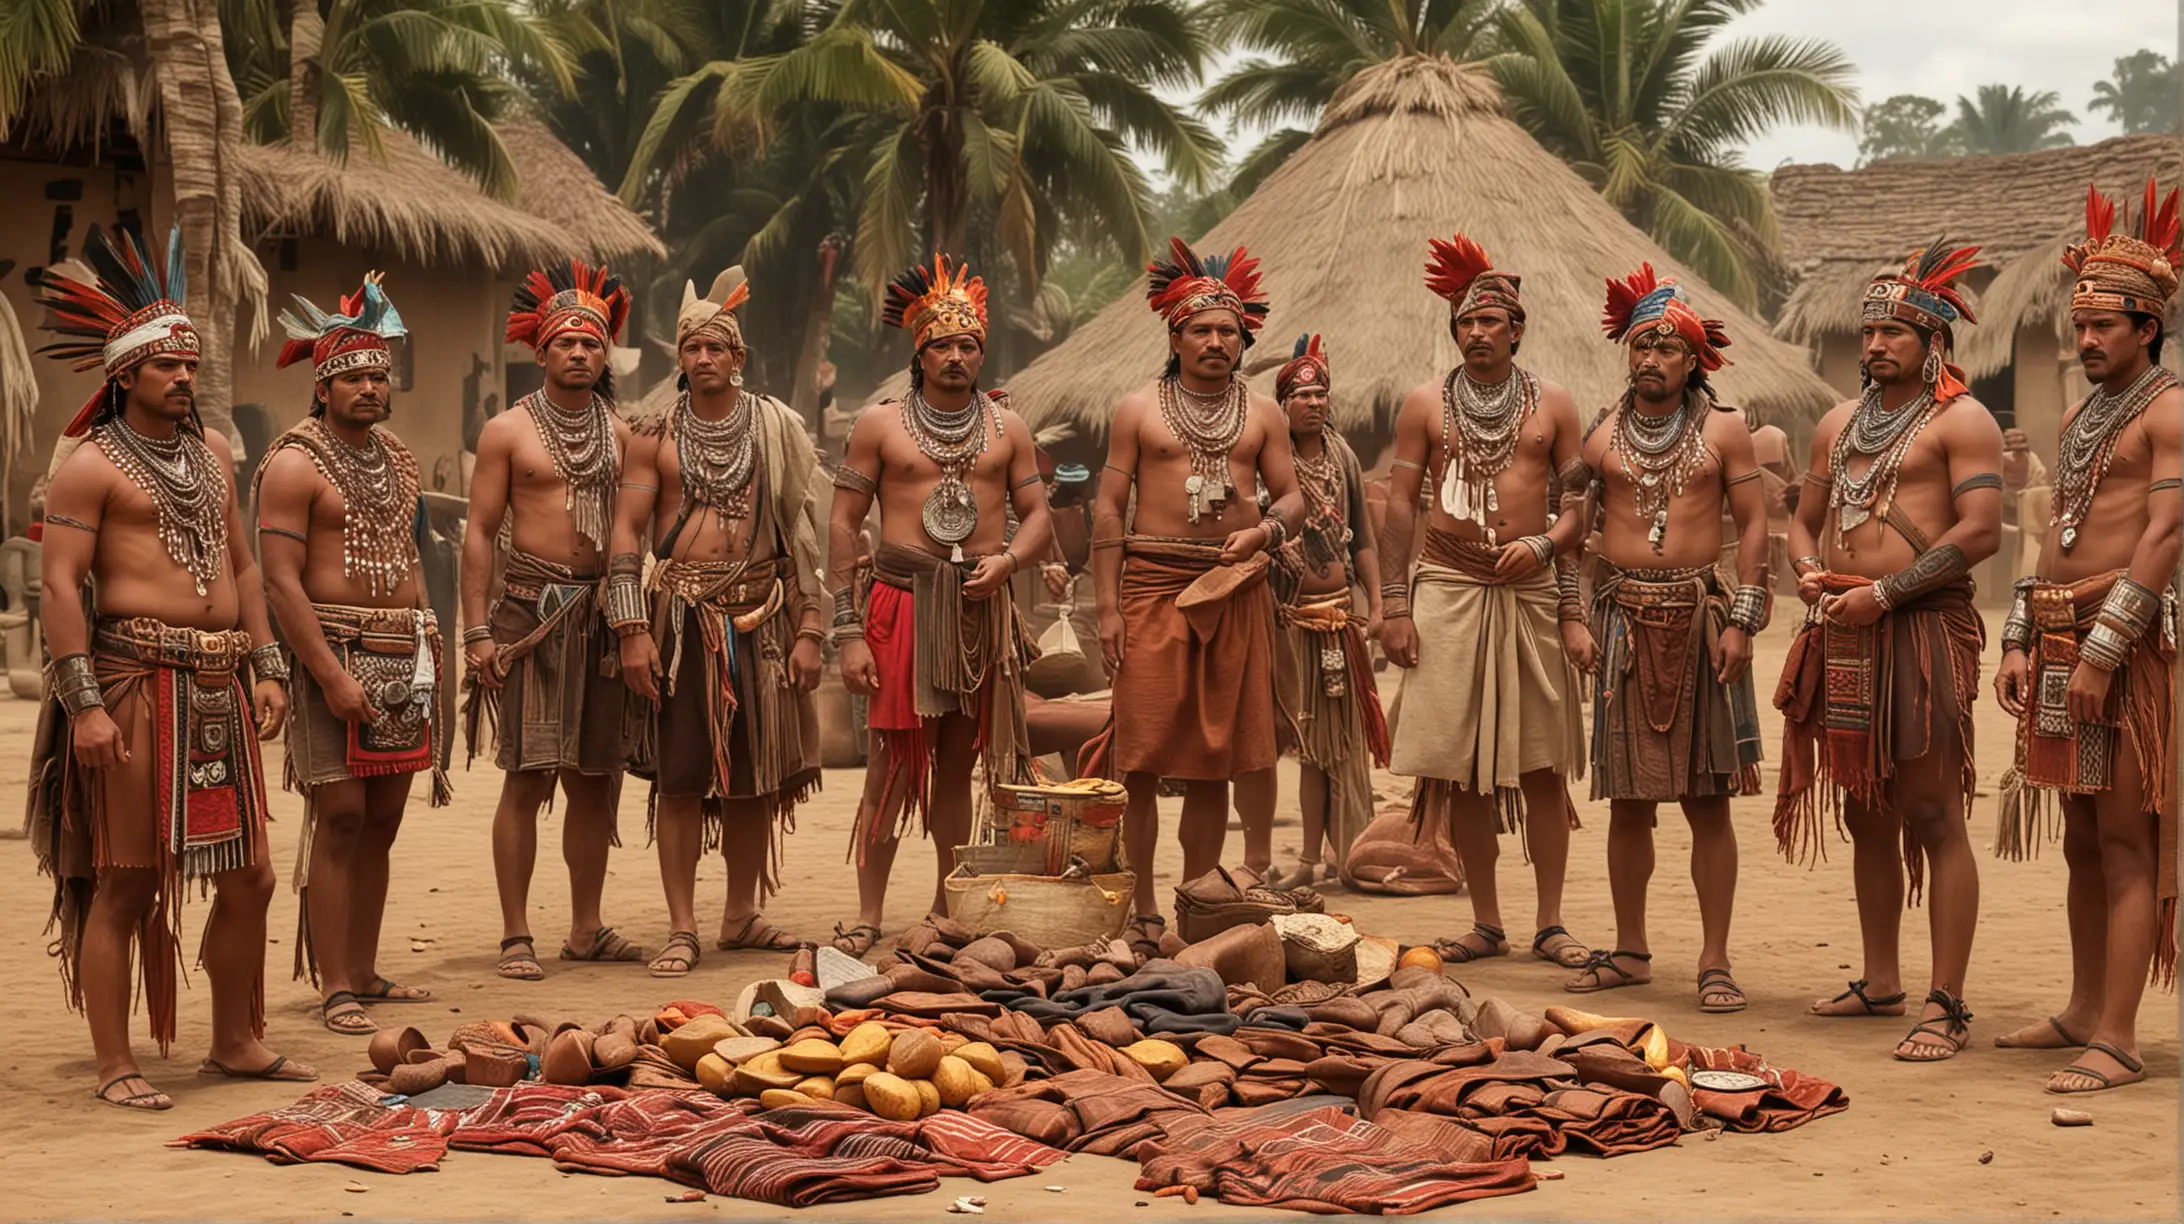 dame una foto realista de  los  azteca  los comerciantes encargado de los intercambios utilizaban el cacao mantas  y otron productos como moneda de cAMBIO